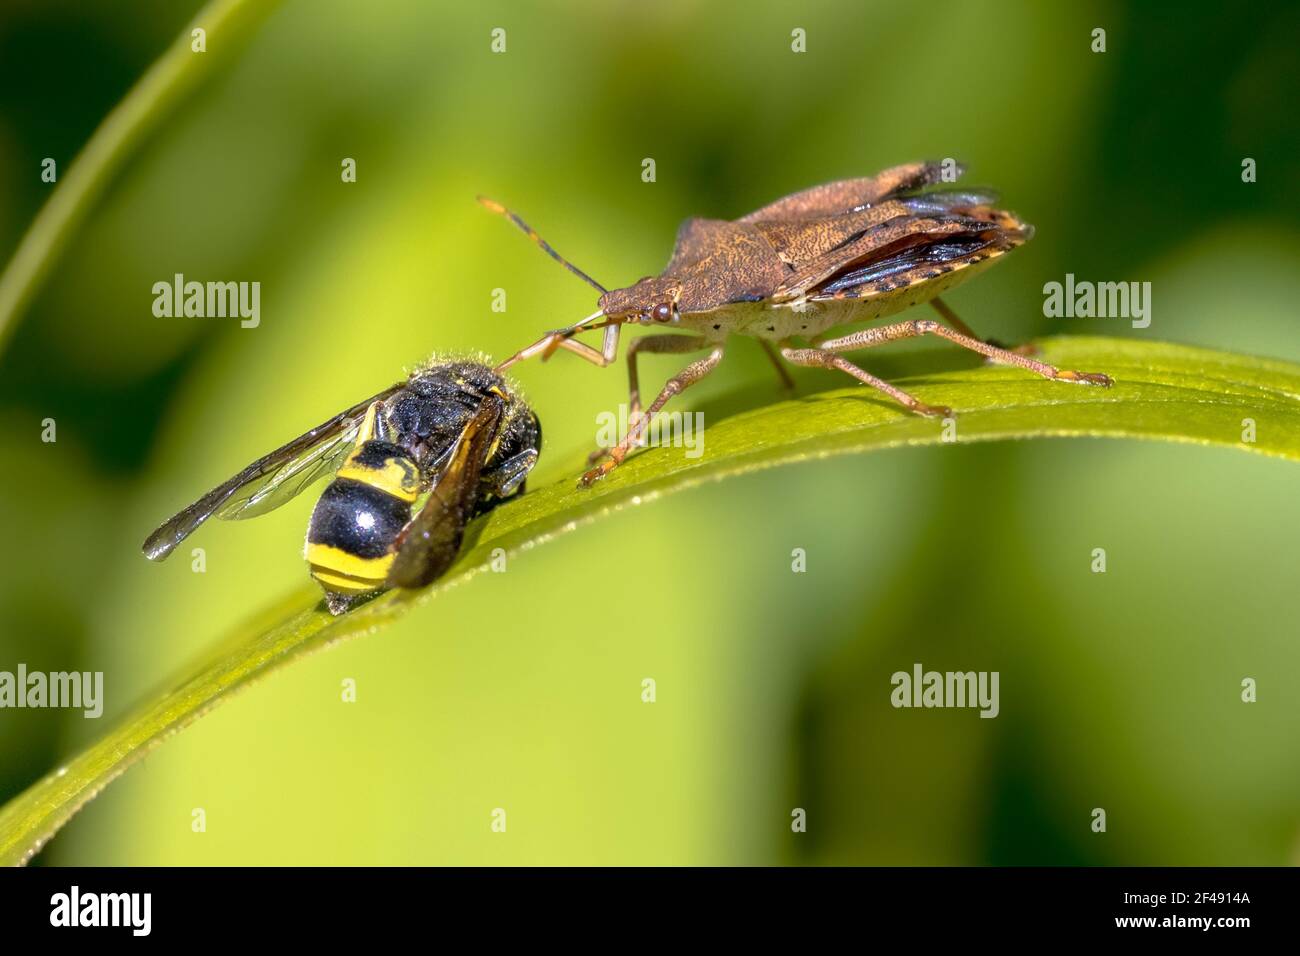 Heteroptera con preda alla vespa. Questo insetto è un vero e proprio scarabeo predatore che predica su altri insetti. Scena della fauna selvatica in natura d'Europa. Paesi Bassi. Foto Stock